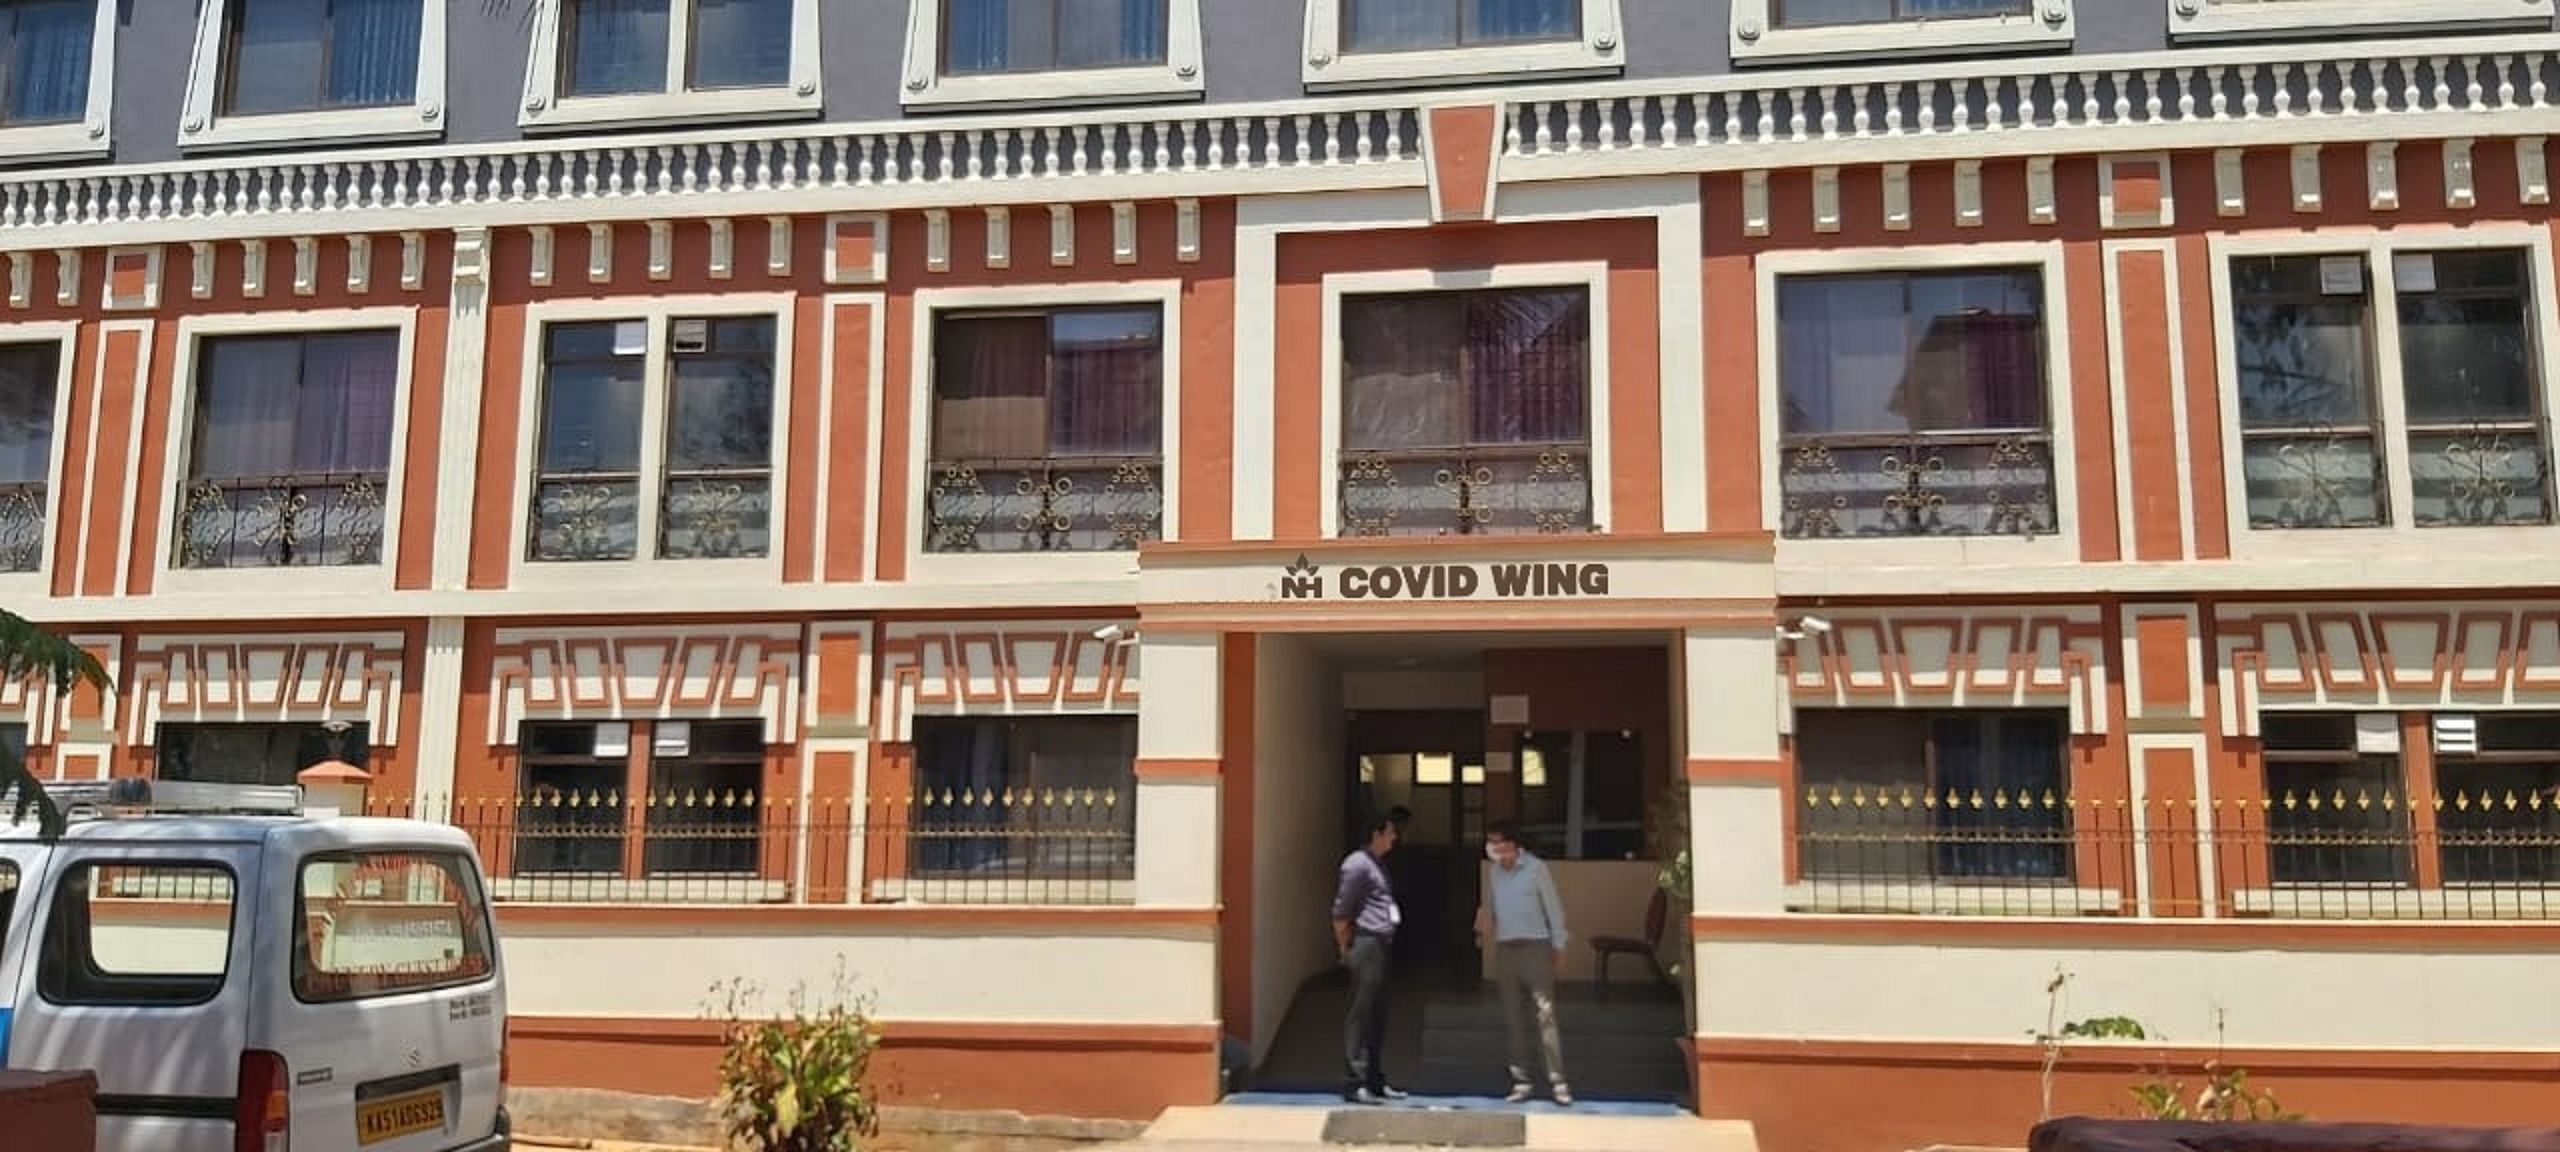 Narayana Health City has a dedicated Covid-19 wing.